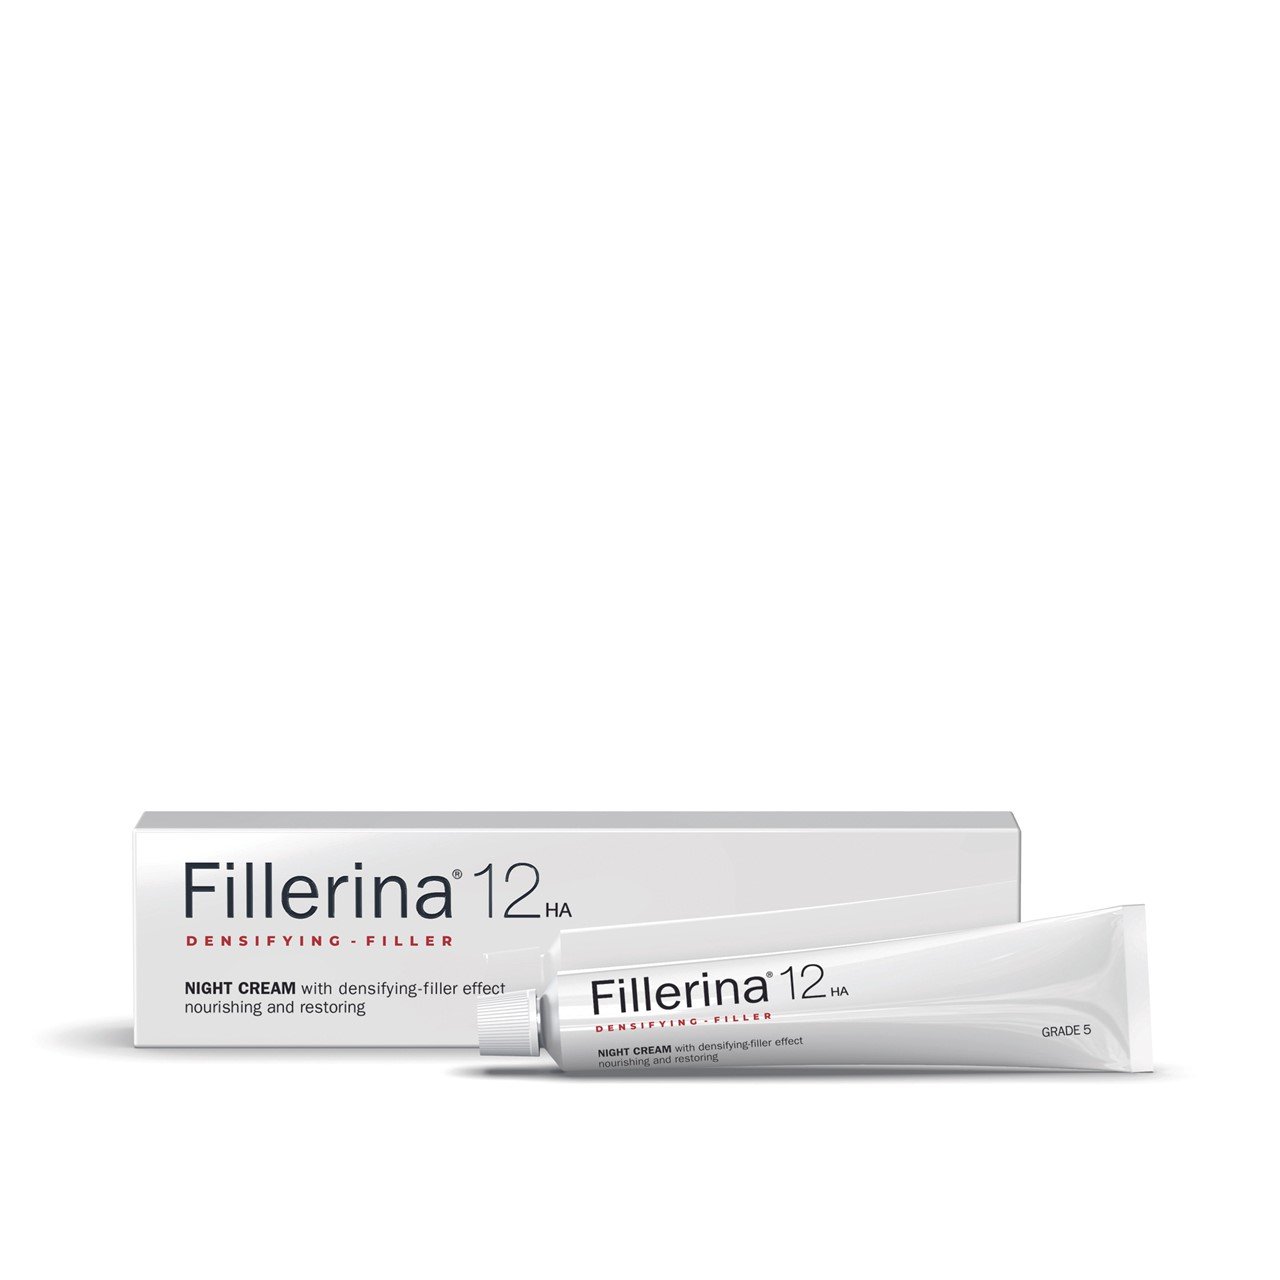 Fillerina 12HA Densifying-Filler Night Cream Grade 5 50ml (1.69fl oz)